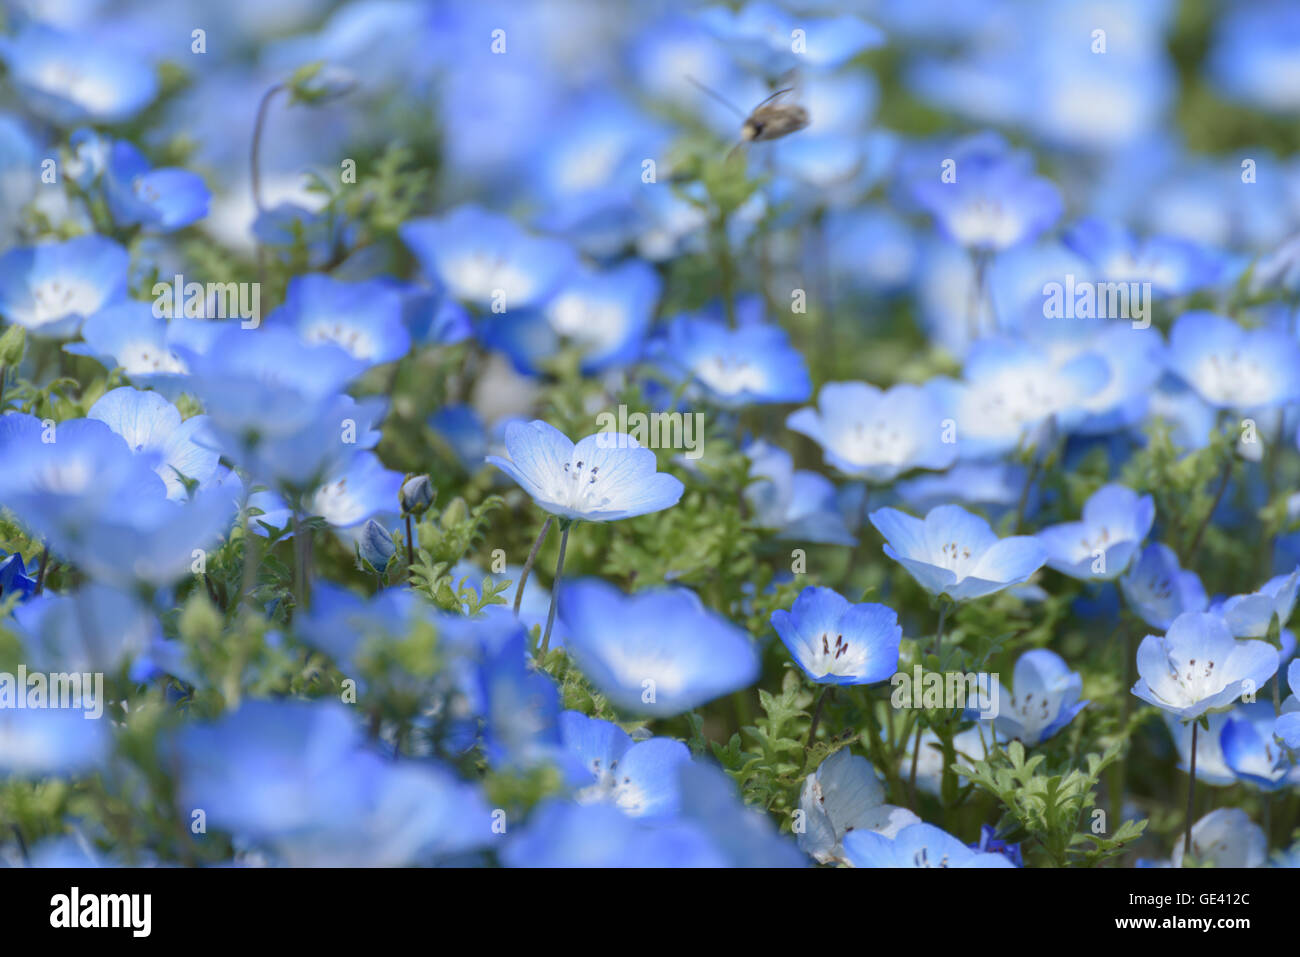 Carpet of Nemophila, or baby blue eyes flower Stock Photo